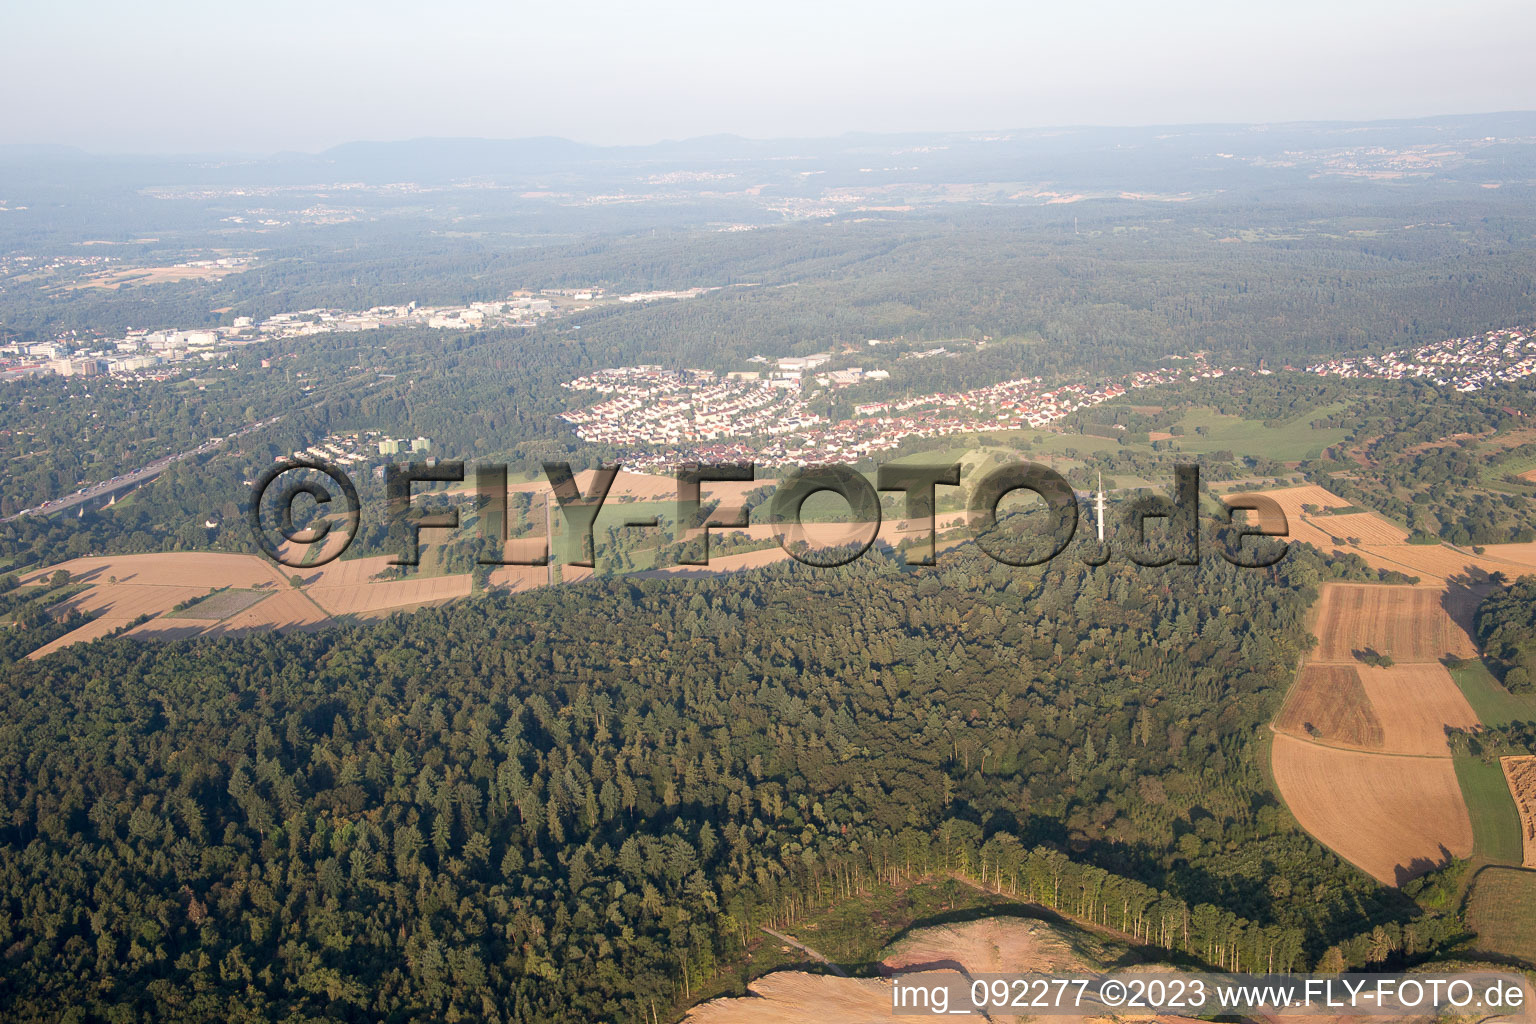 Ispringen im Bundesland Baden-Württemberg, Deutschland aus der Drohnenperspektive